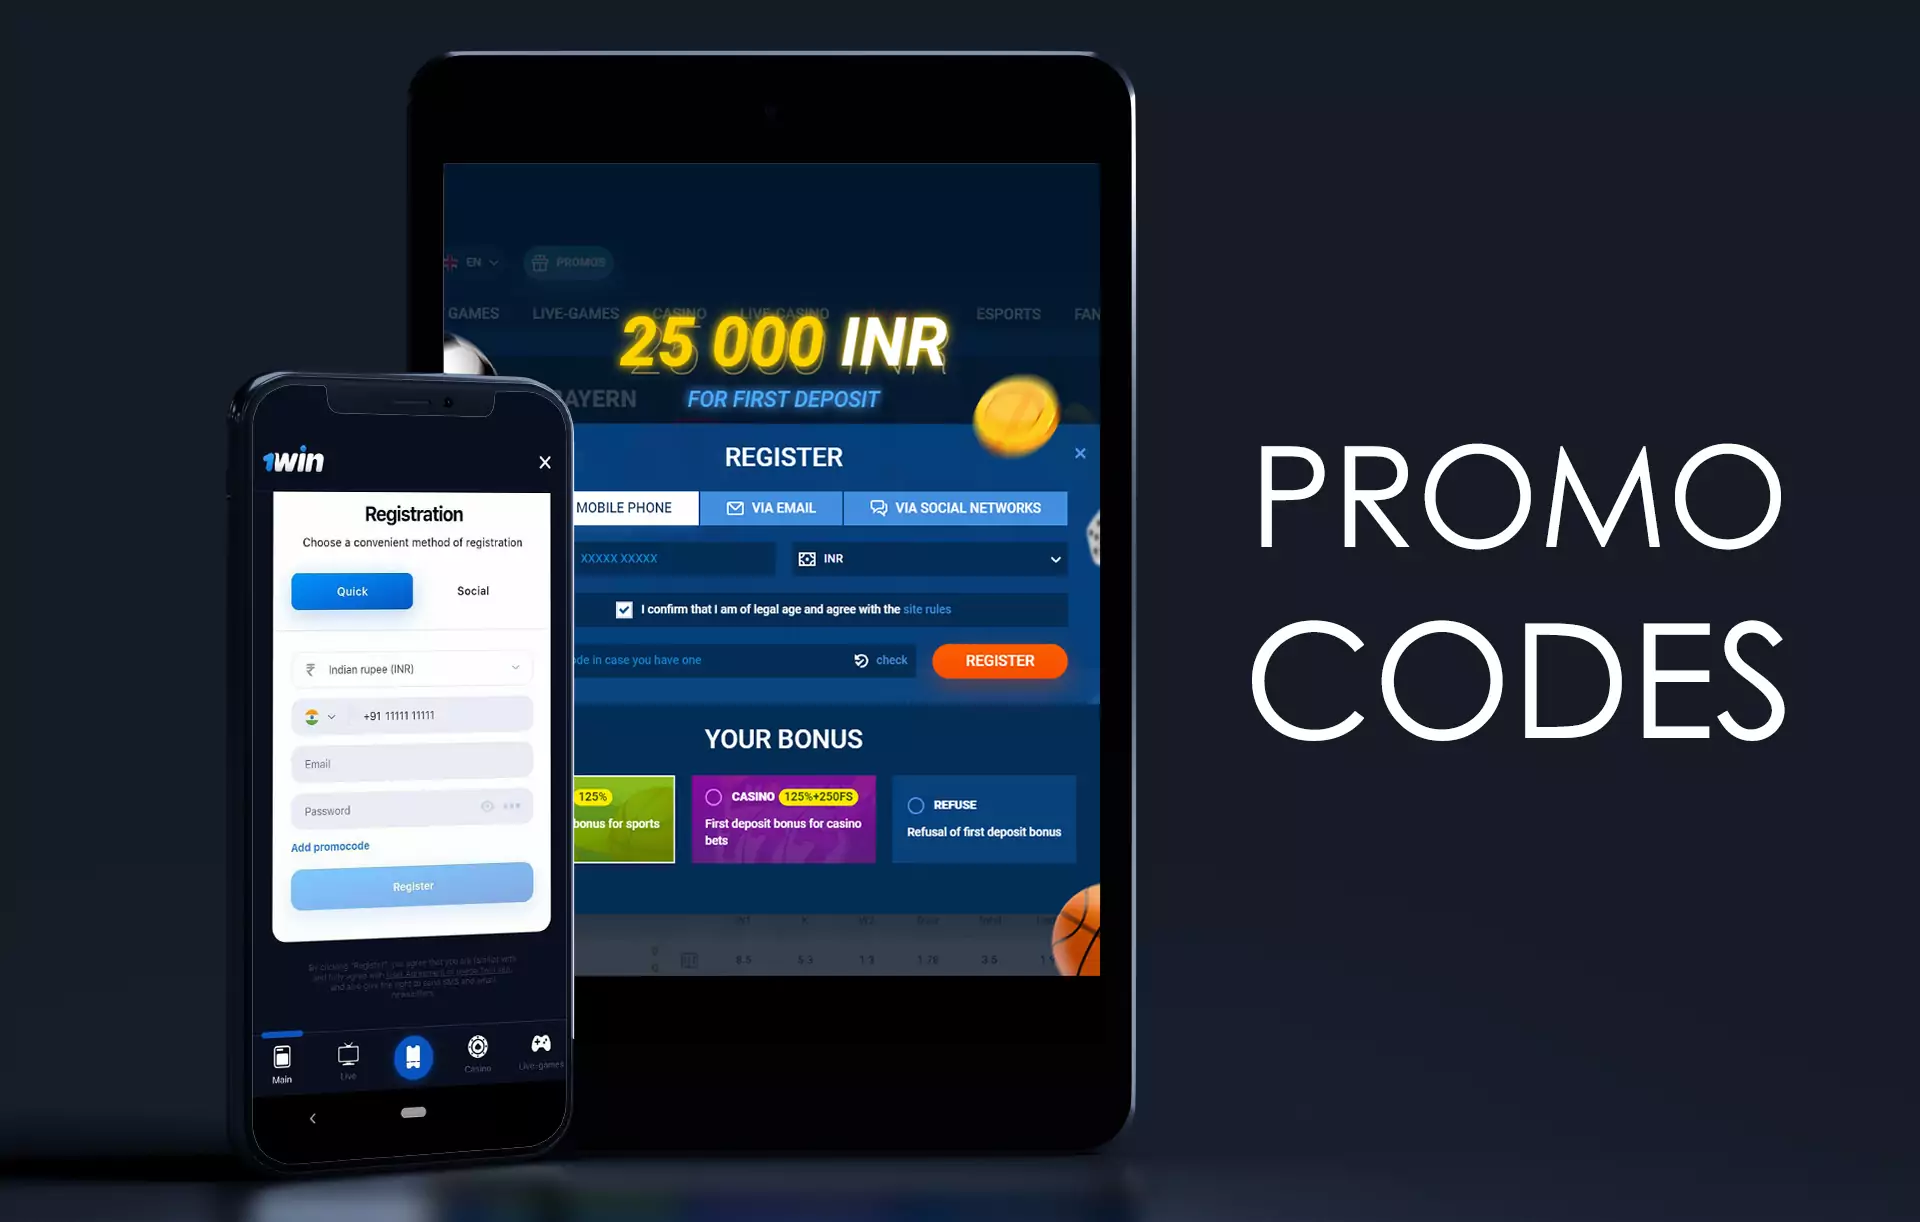 प्रोमो कोड आपको क्रिकेट सट्टेबाजी के लिए साइट पर अतिरिक्त बोनस प्राप्त करने की अनुमति देते हैं।